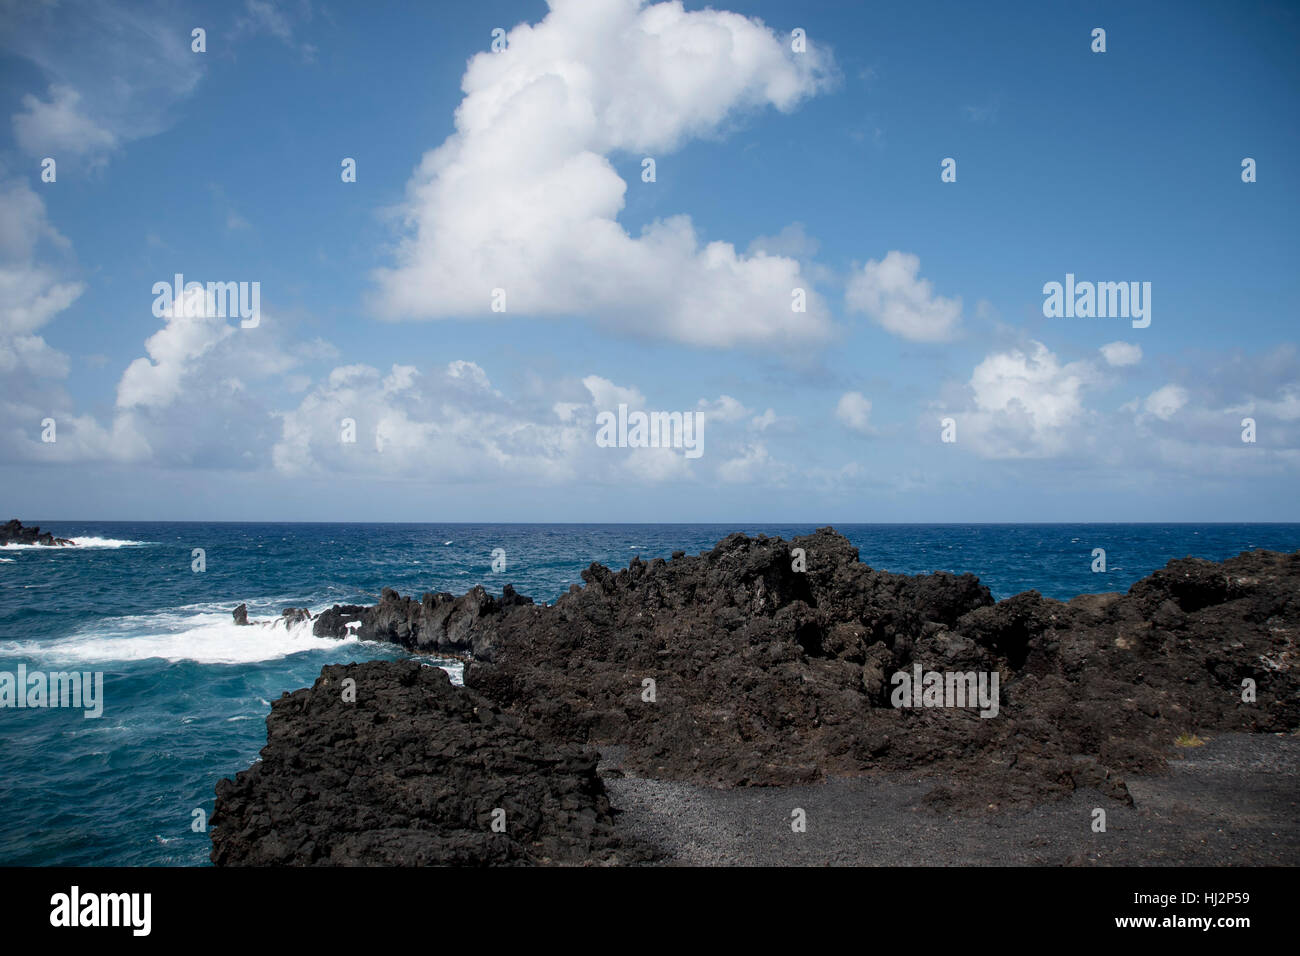 Un littoral volcanique rocheux avec les vagues de l'océan turquoise. Banque D'Images